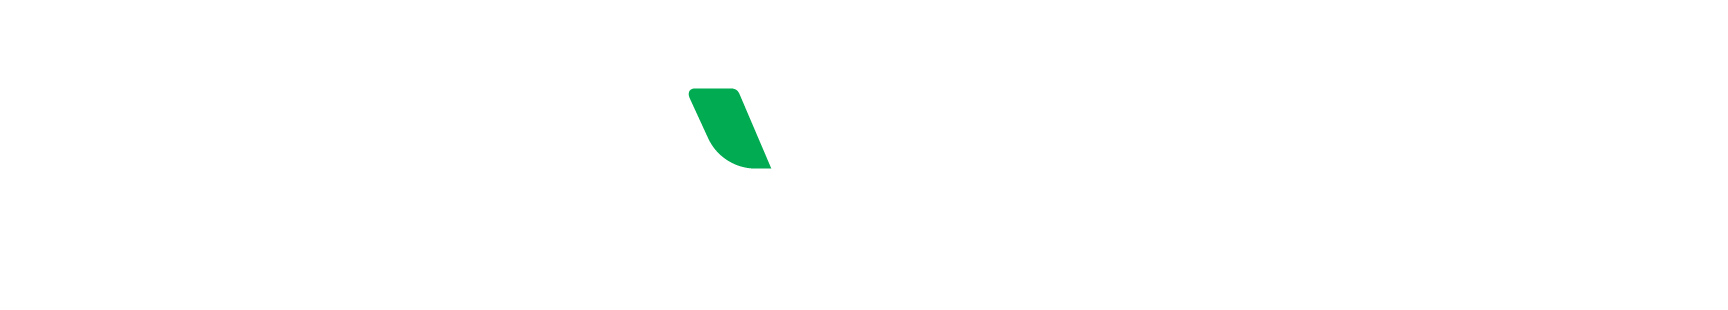 EcoVadis_White_Logo